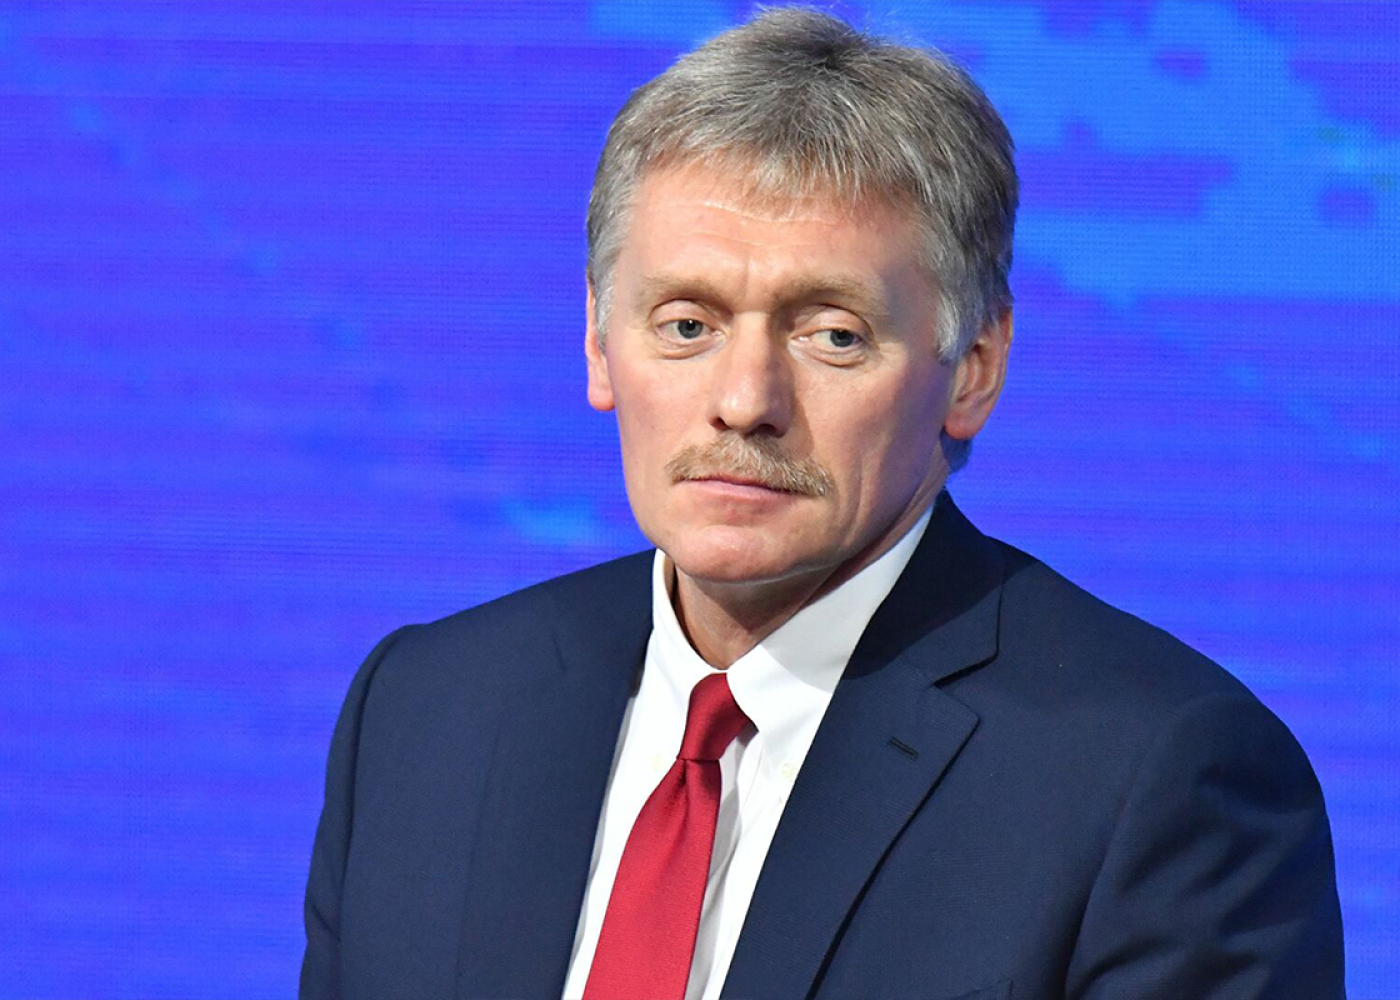 “Krokus”dakı terror aktı ilə bağlı rəsmi versiya irəli sürülməyib - Peskov